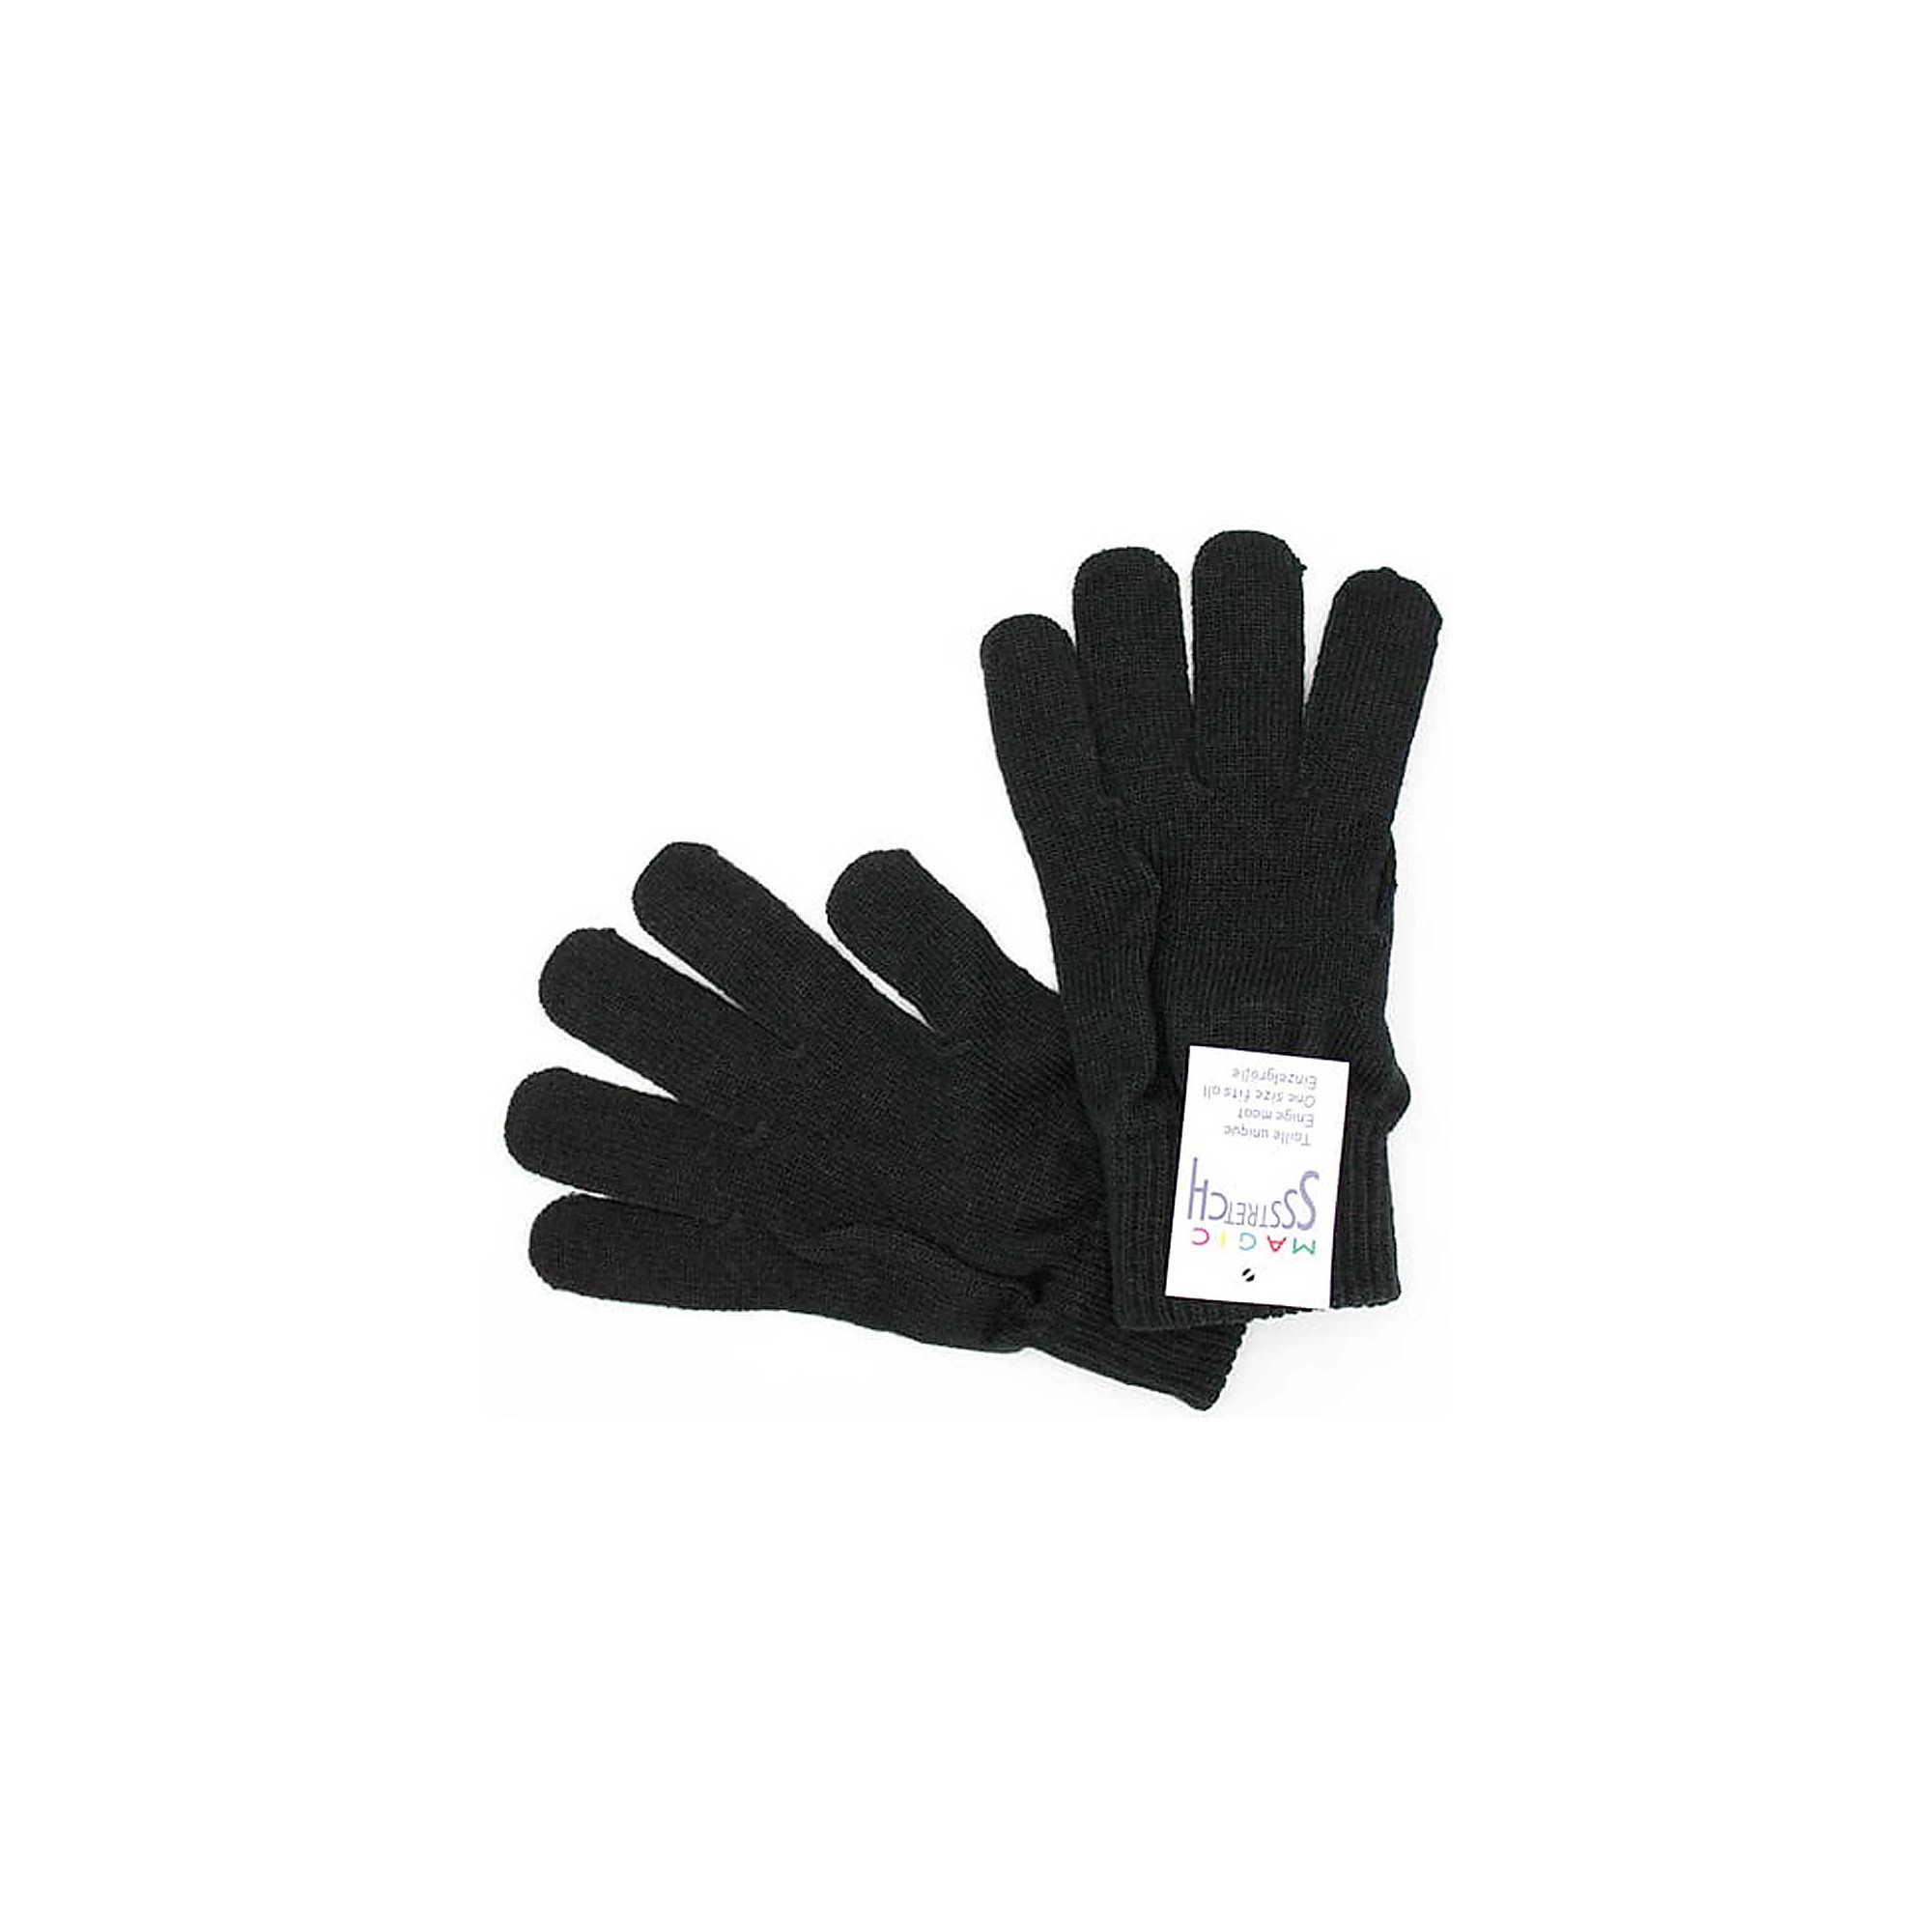 Magic Stretch winter gloves